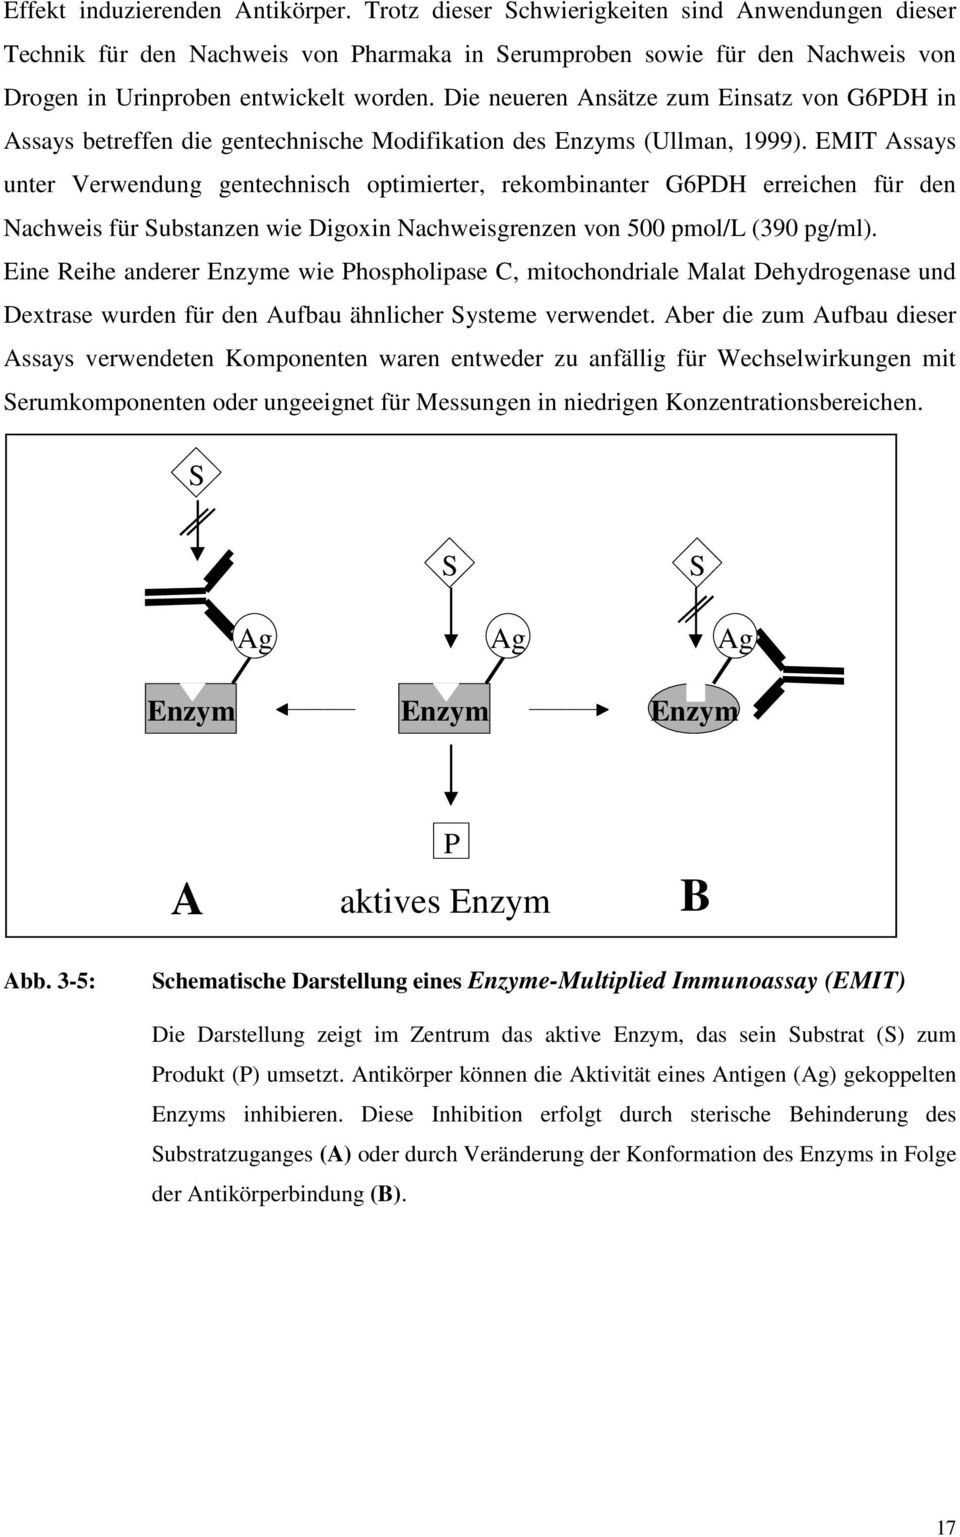 Die neueren Ansätze zum Einsatz von G6PDH in Assays betreffen die gentechnische Modifikation des Enzyms (Ullman, 1999).